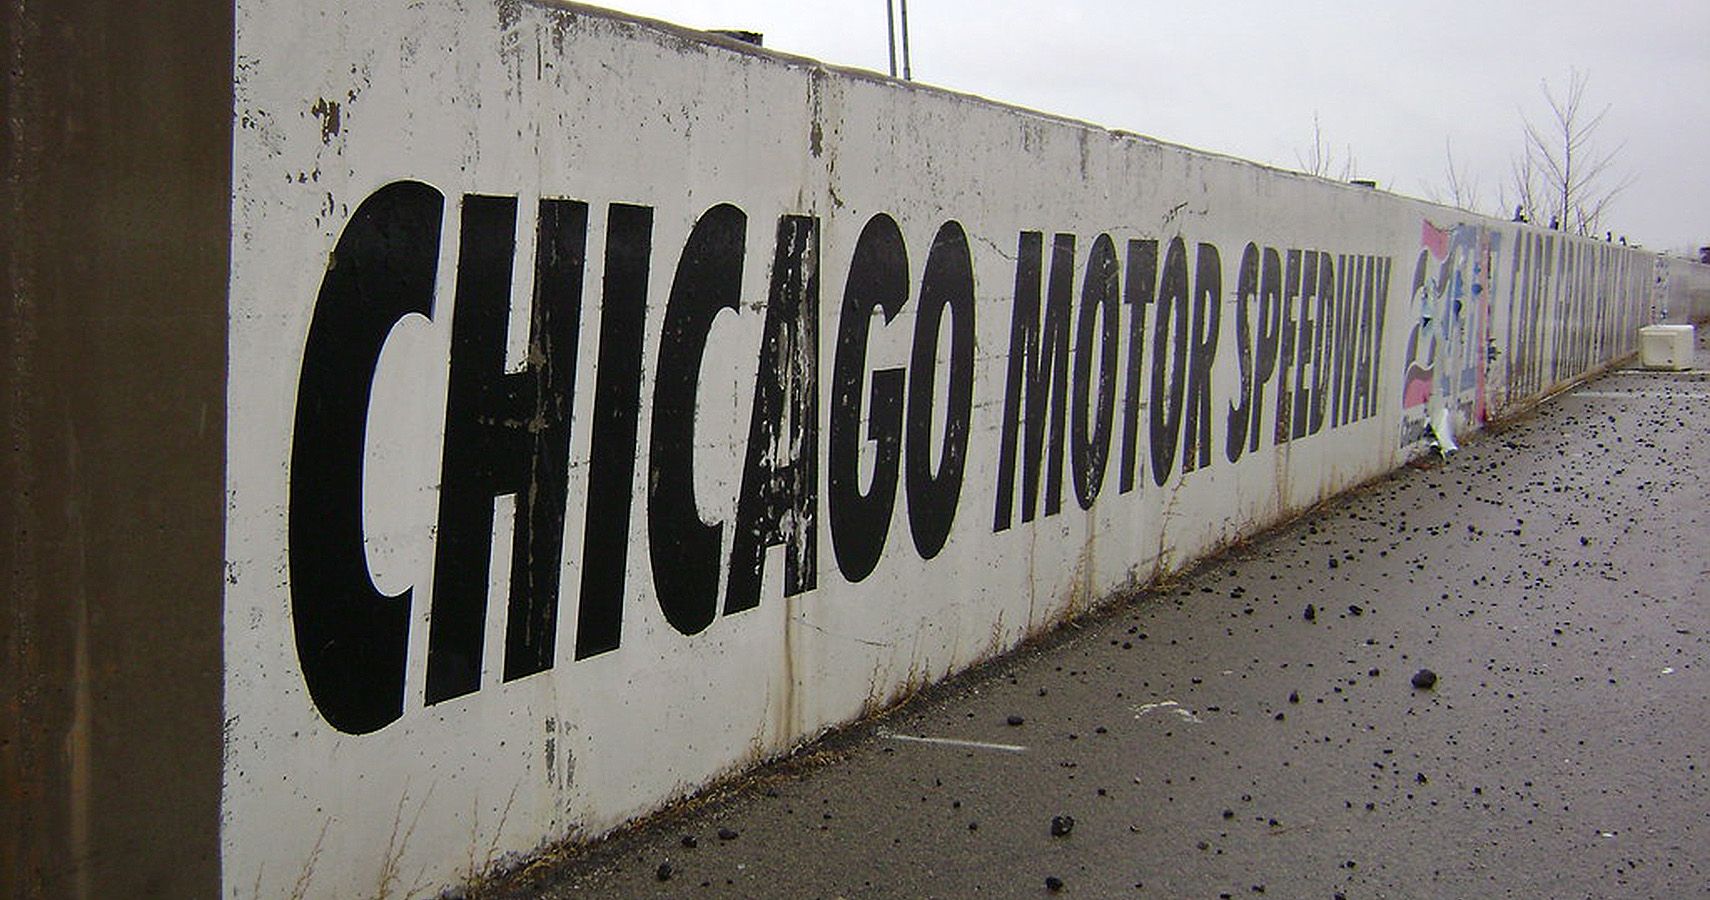 Chicago Motor Speedway, Chicago